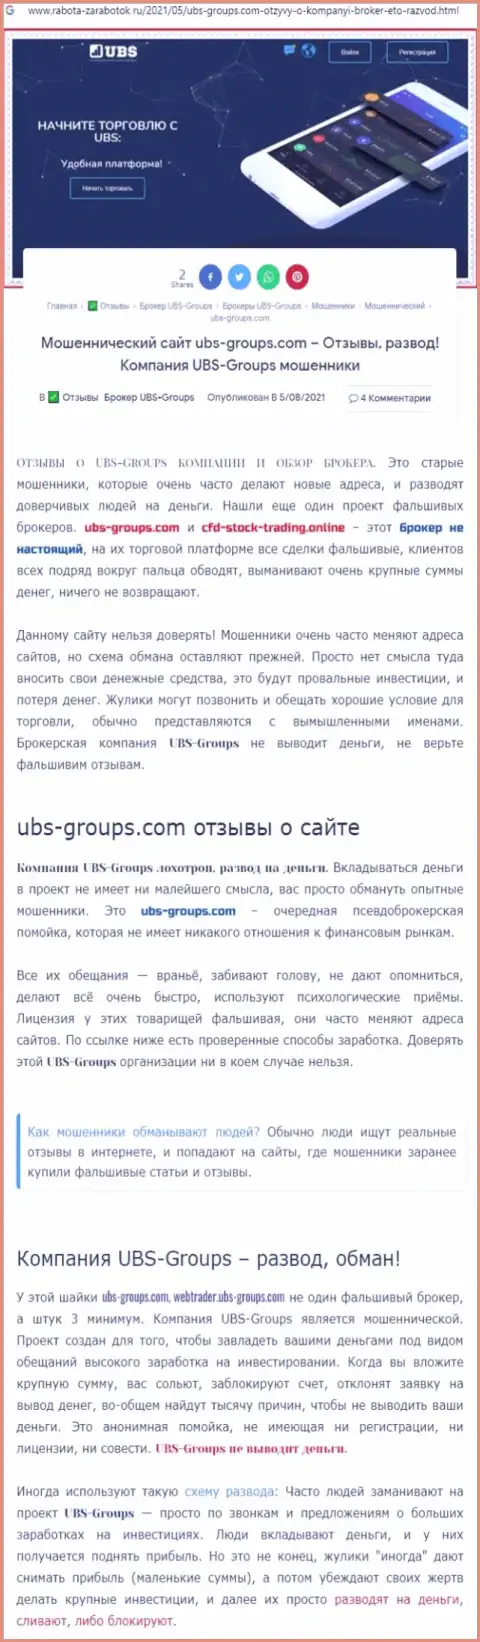 Подробный анализ методов развода UBS-Groups (обзорная статья)